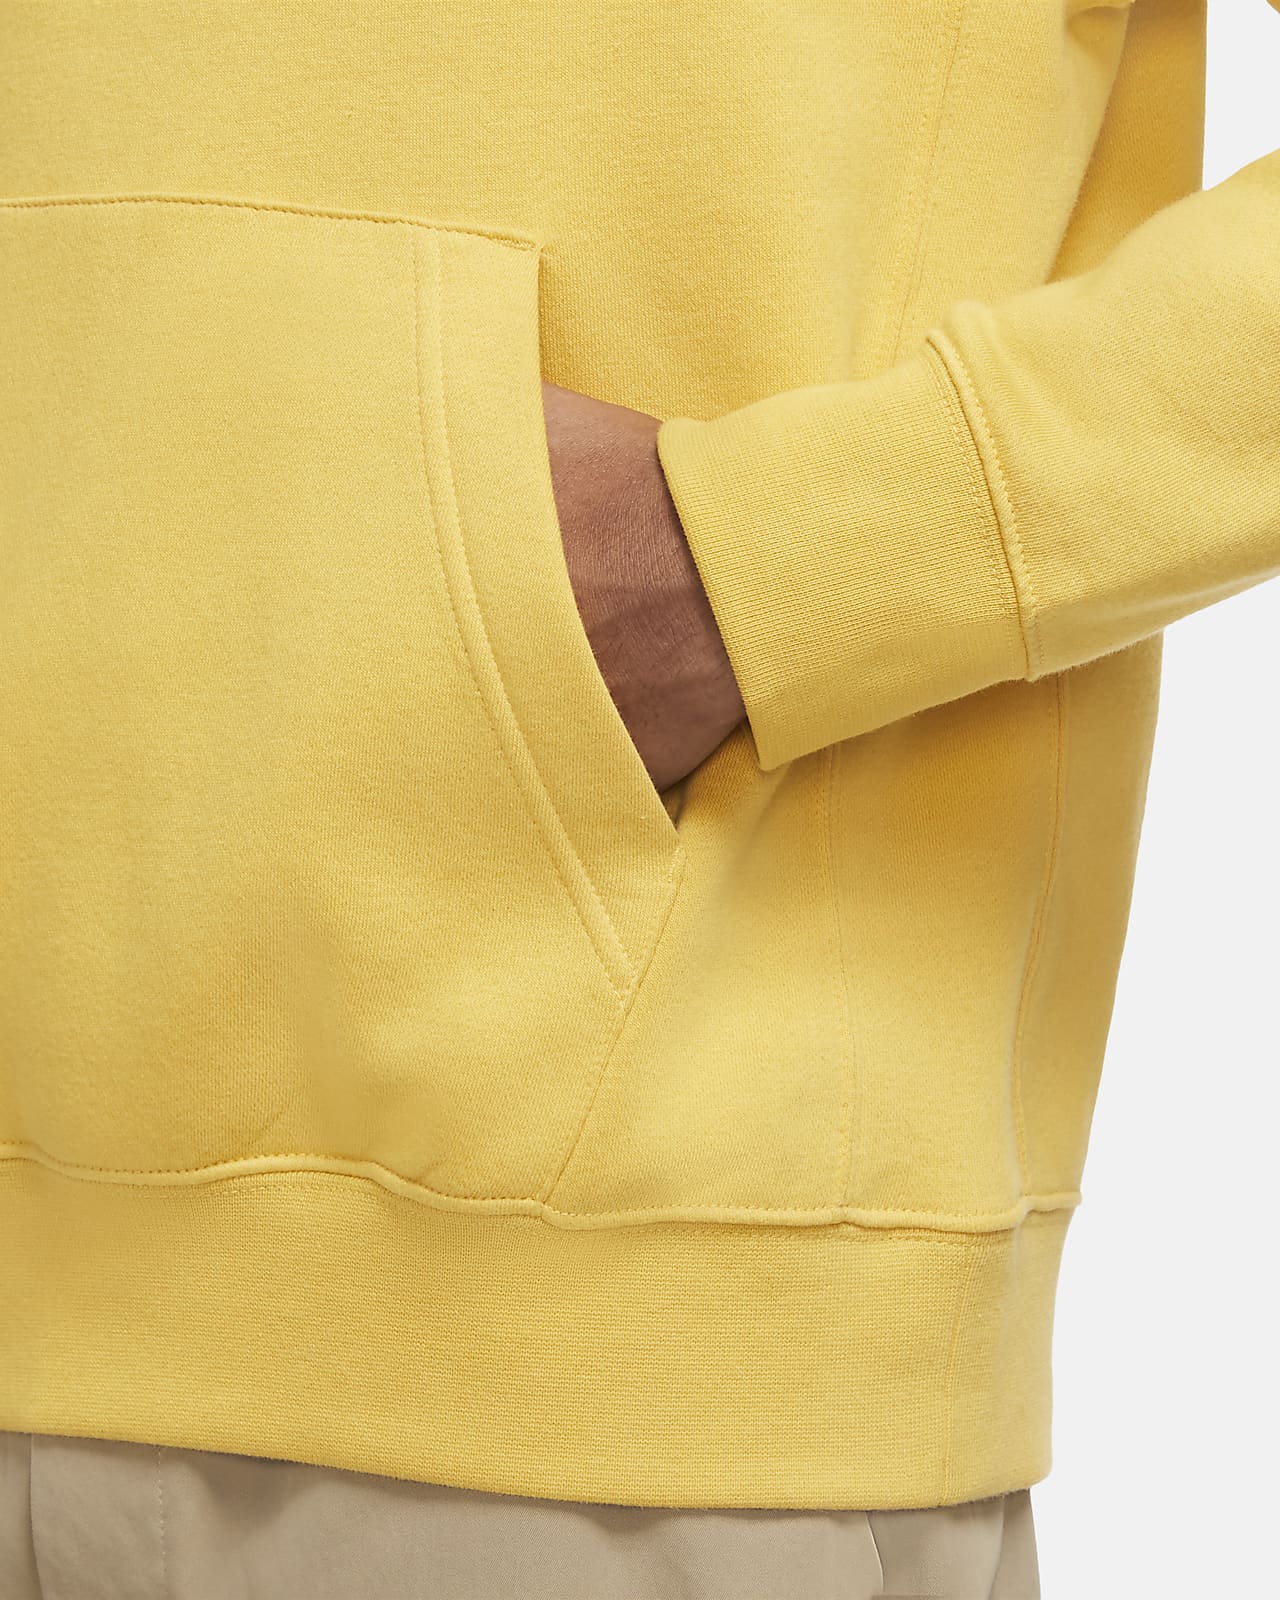 nike club fleece hoodie yellow